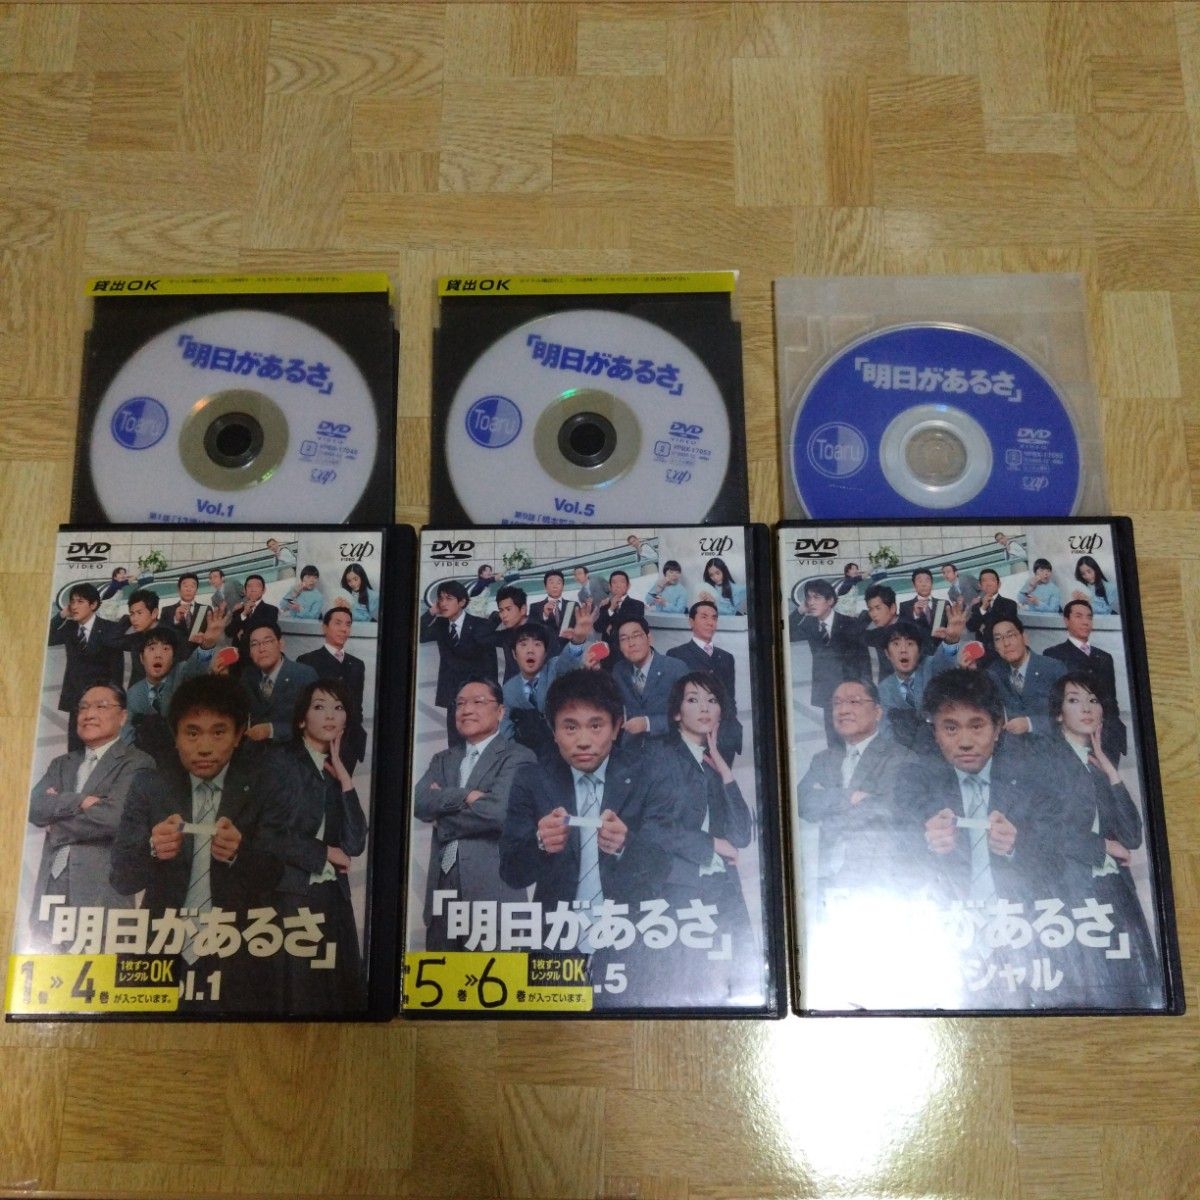 明日があるさ DVD 1-6 全巻＆スペシャル 浜田雅功 松本人志 ダウンタウン